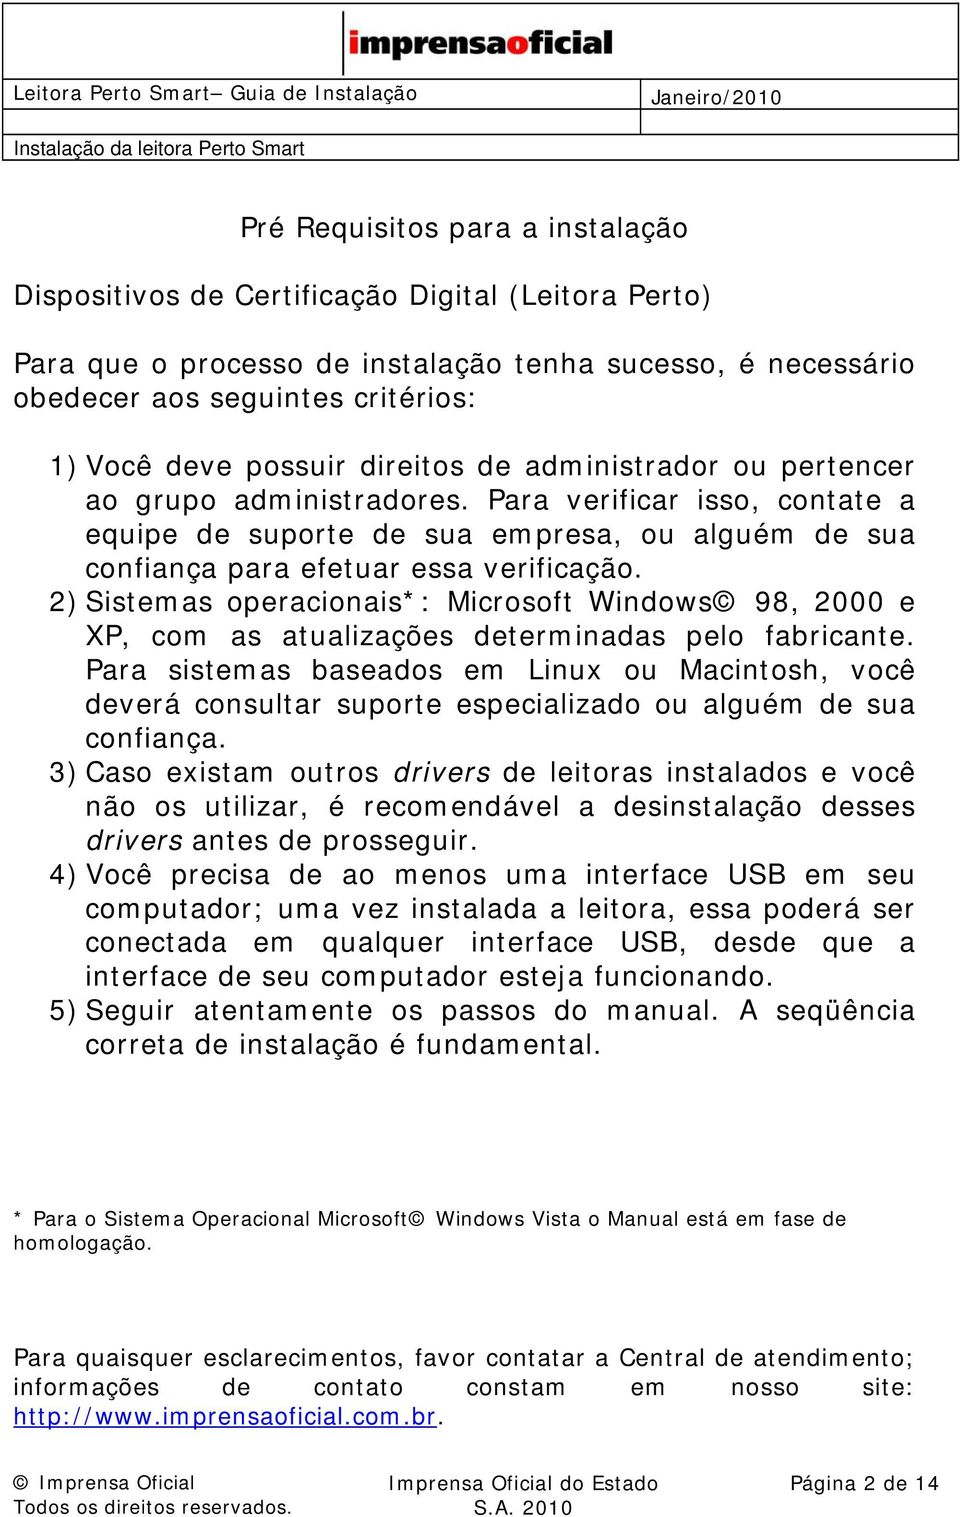 2) Sistemas operacionais*: Microsoft Windows 98, 2000 e XP, com as atualizações determinadas pelo fabricante.